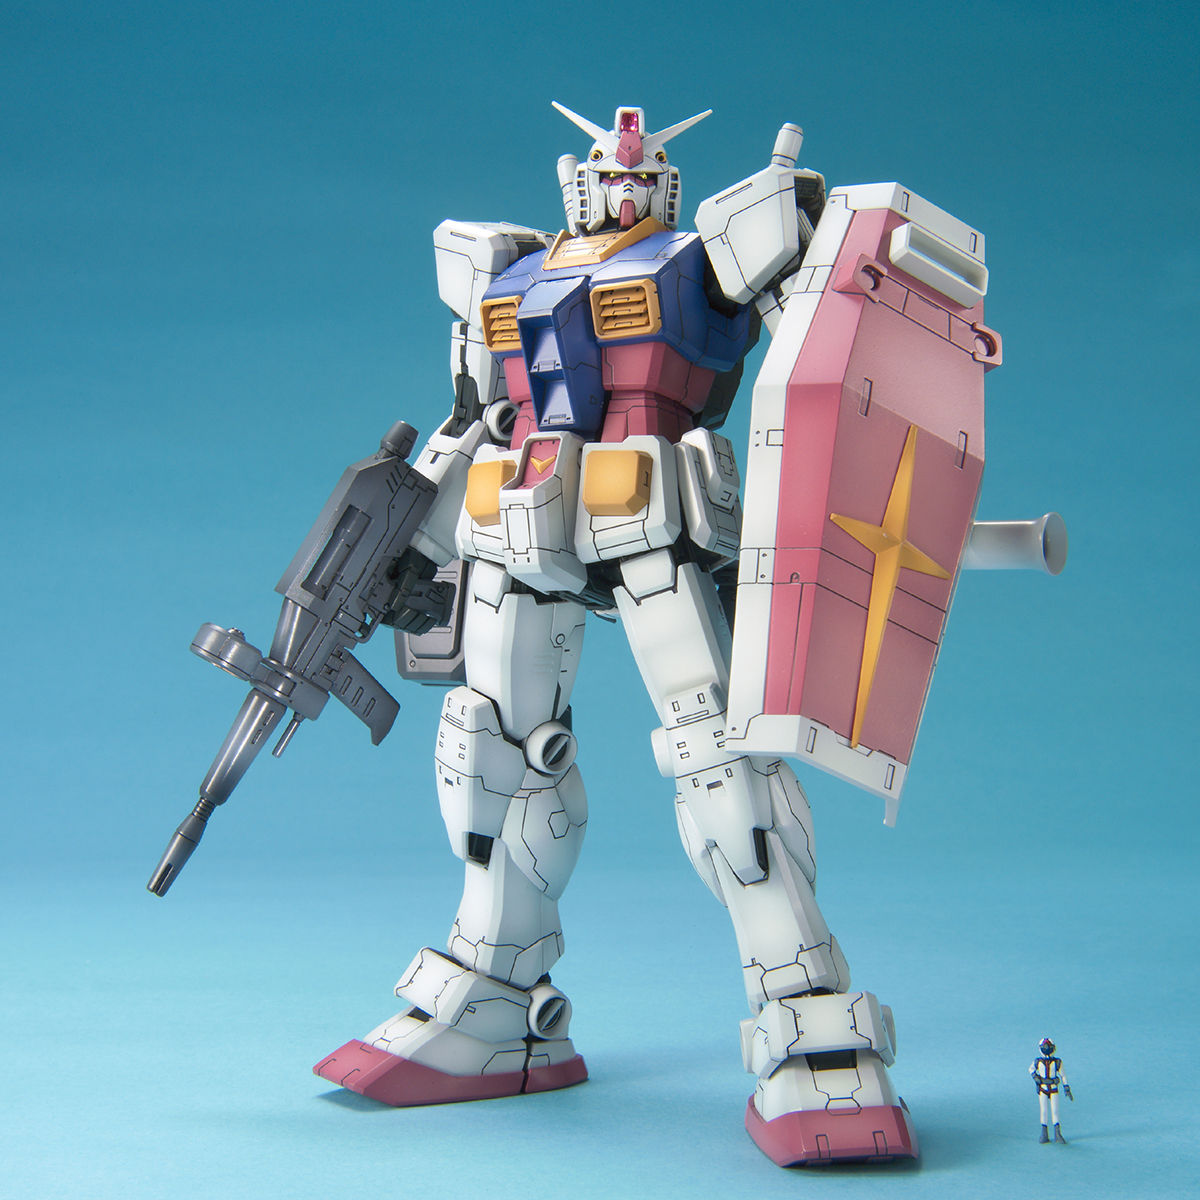 Bandai MG 1/100 Gundam RX-78-2 Ver OYW 0079 (One Year War 